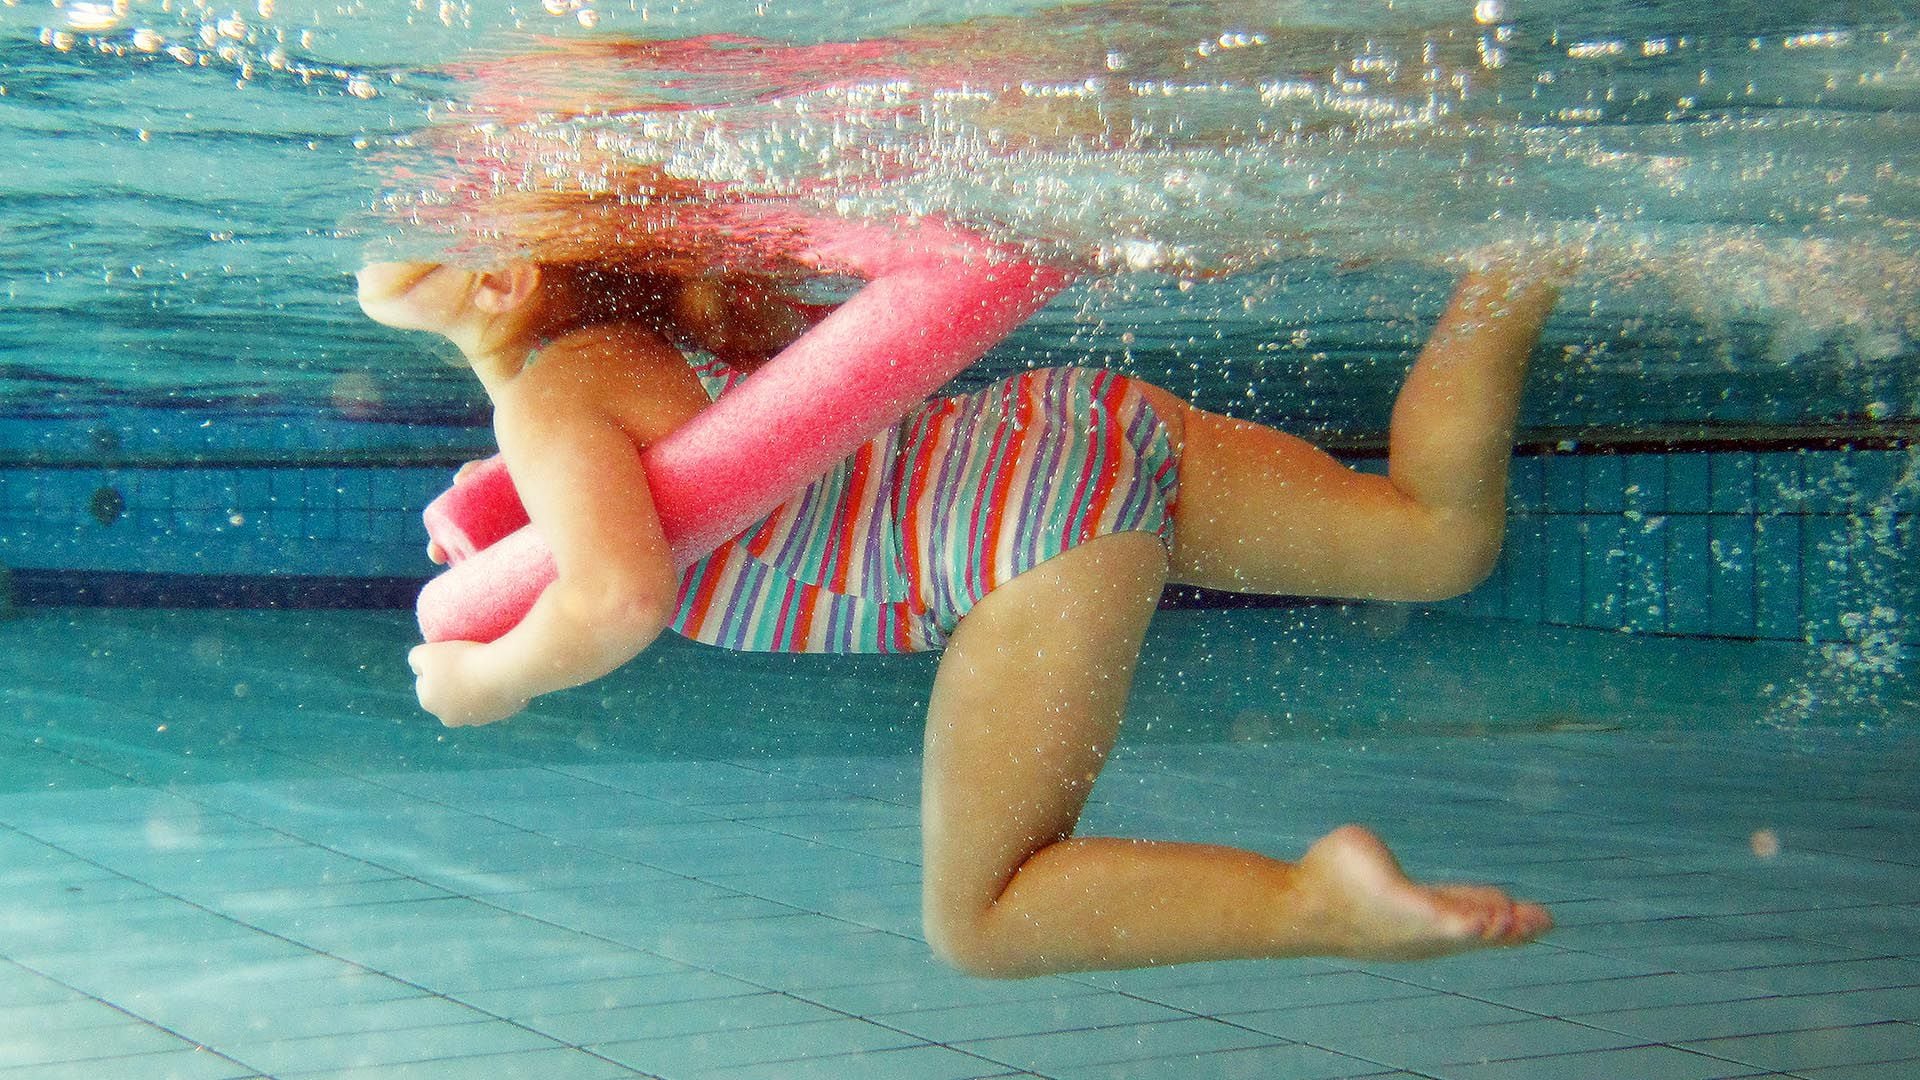 El ahogamiento es el proceso de sufrir una discapacidad respiratoria por sumersión o inmersión en un líquido. Ahogarse no siempre es fata (Getty)